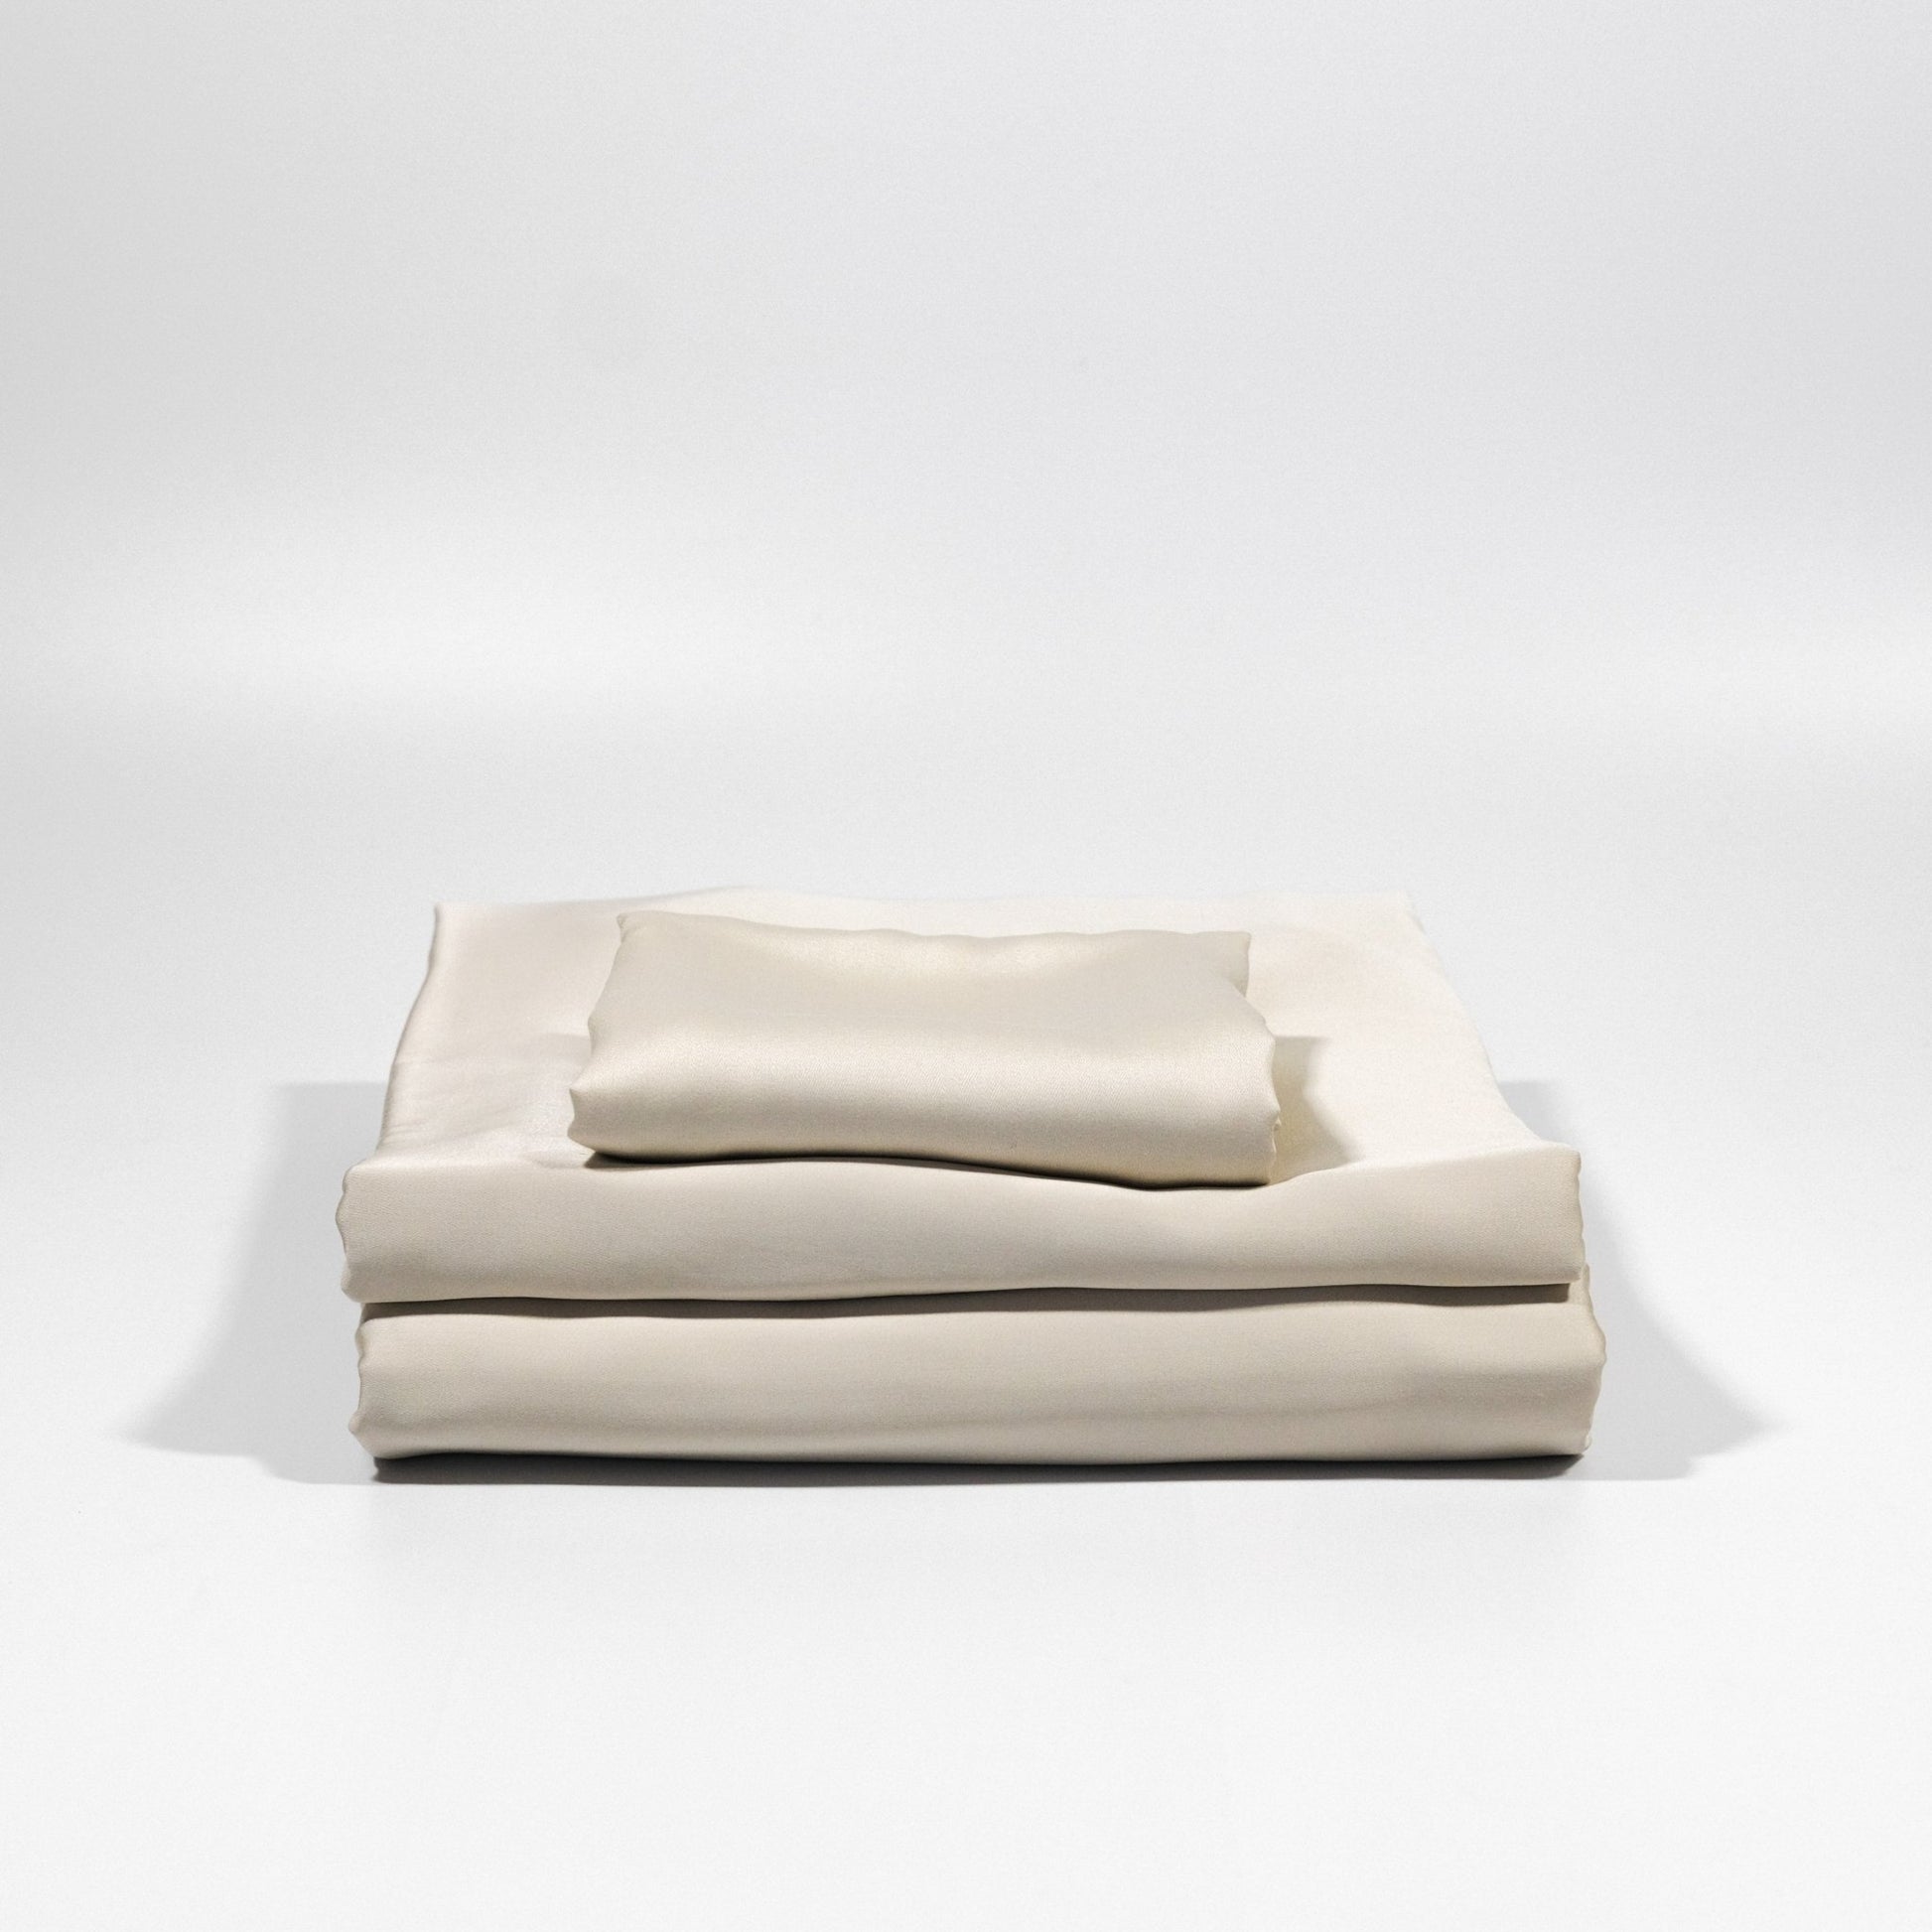 Bamboo Bedding Set(掛け布団カバー&ボックスシーツ&枕カバー) - aucentic